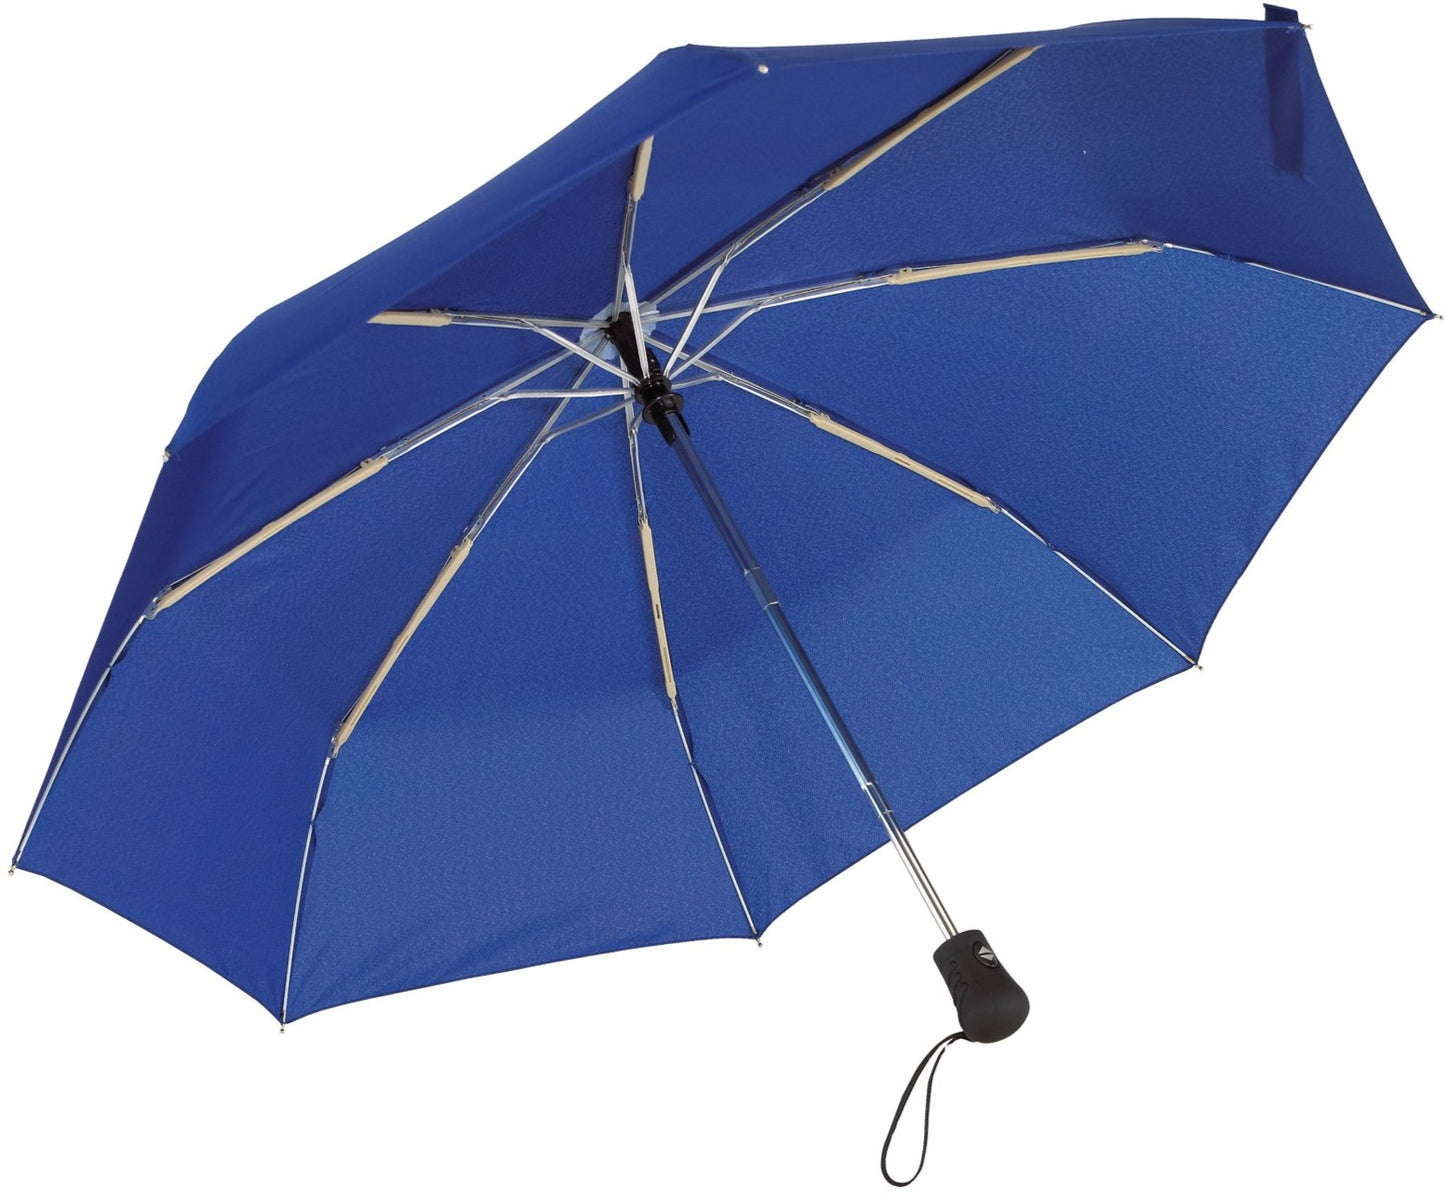 Μπλε ρουά ομπρέλα βροχής, μίνι, αντιανεμική και twinmatic.